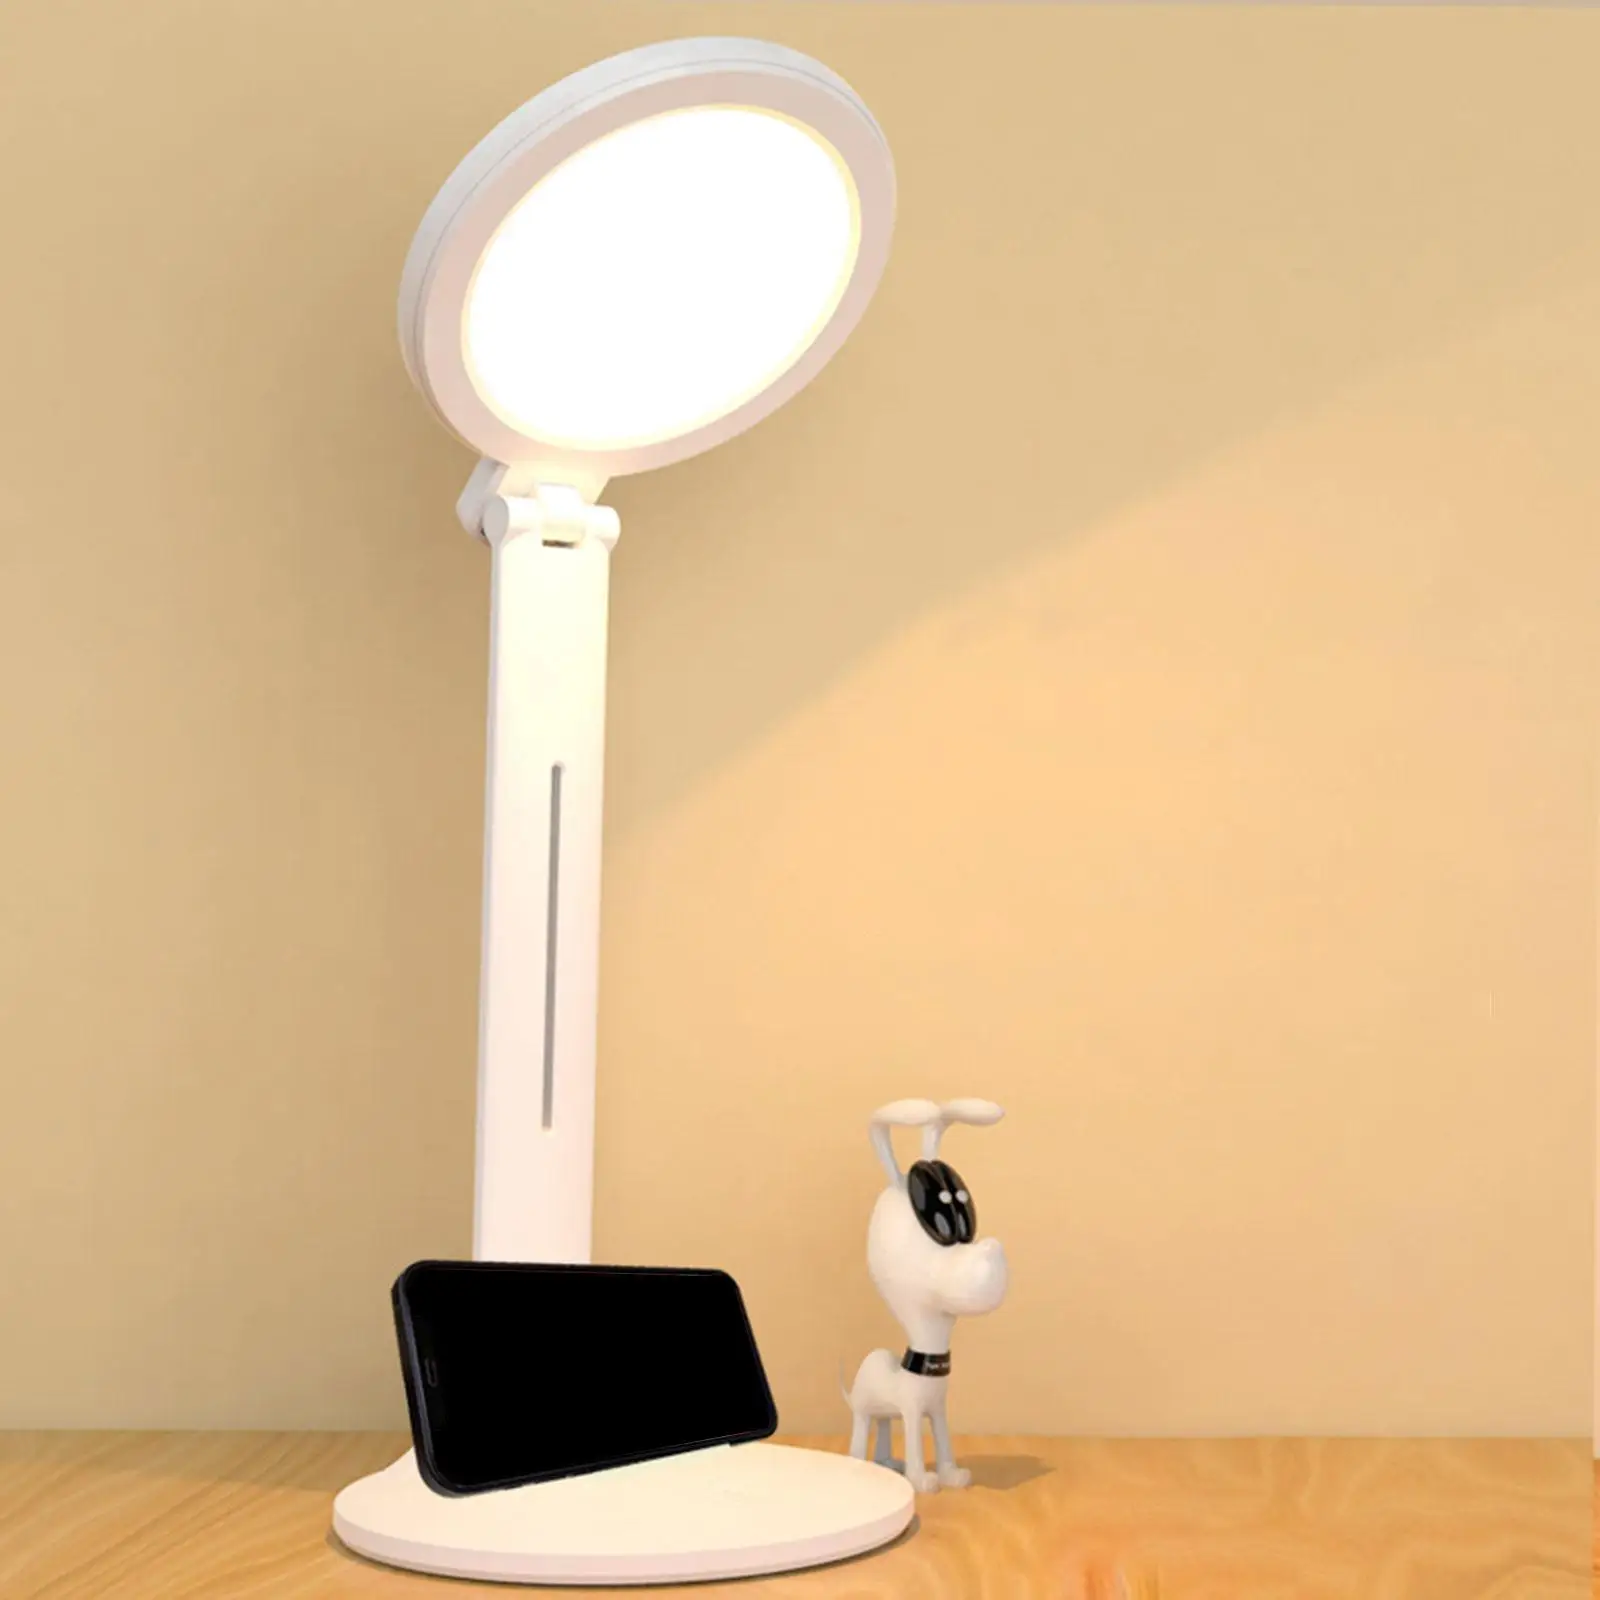 LED Desk Lamp Dimming Reading Light Table Lamp for Study Working Living Room Dorm Desktop